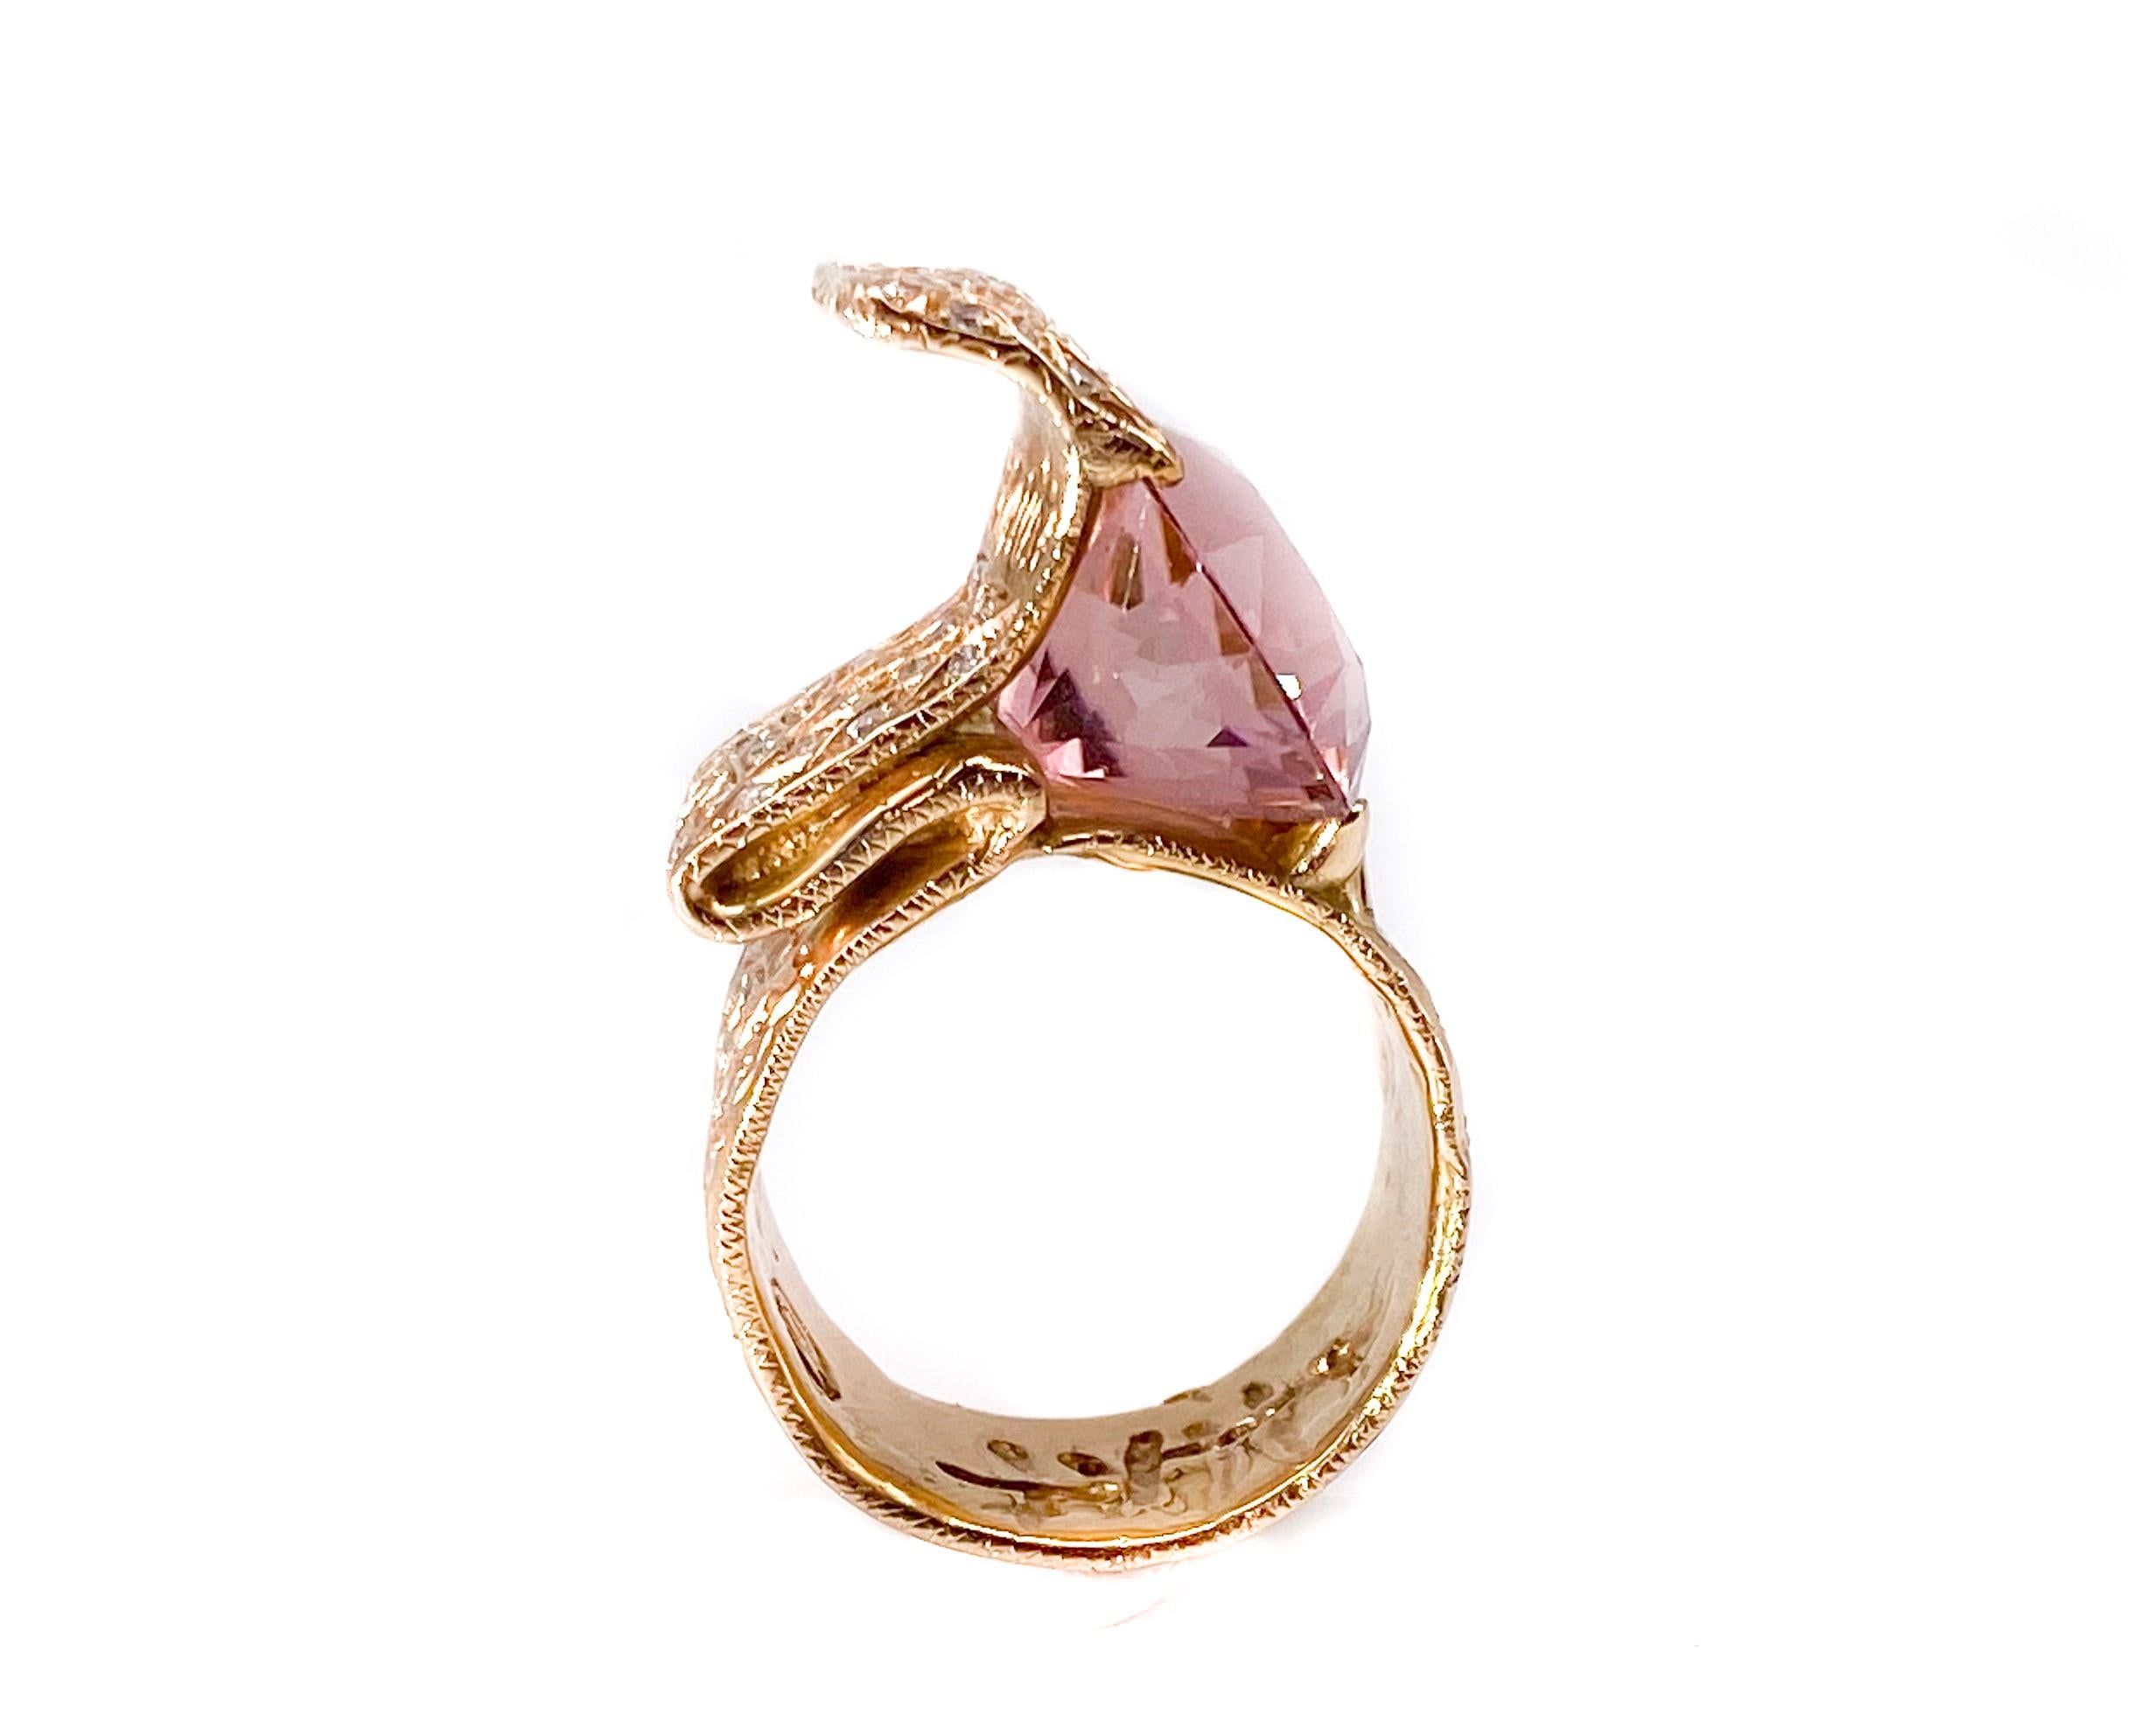 Contemporary 18 Karat Rose Gold Ring with Red Tourmaline ‘Carat 12’ and Diamonds ‘Carat.1.36’